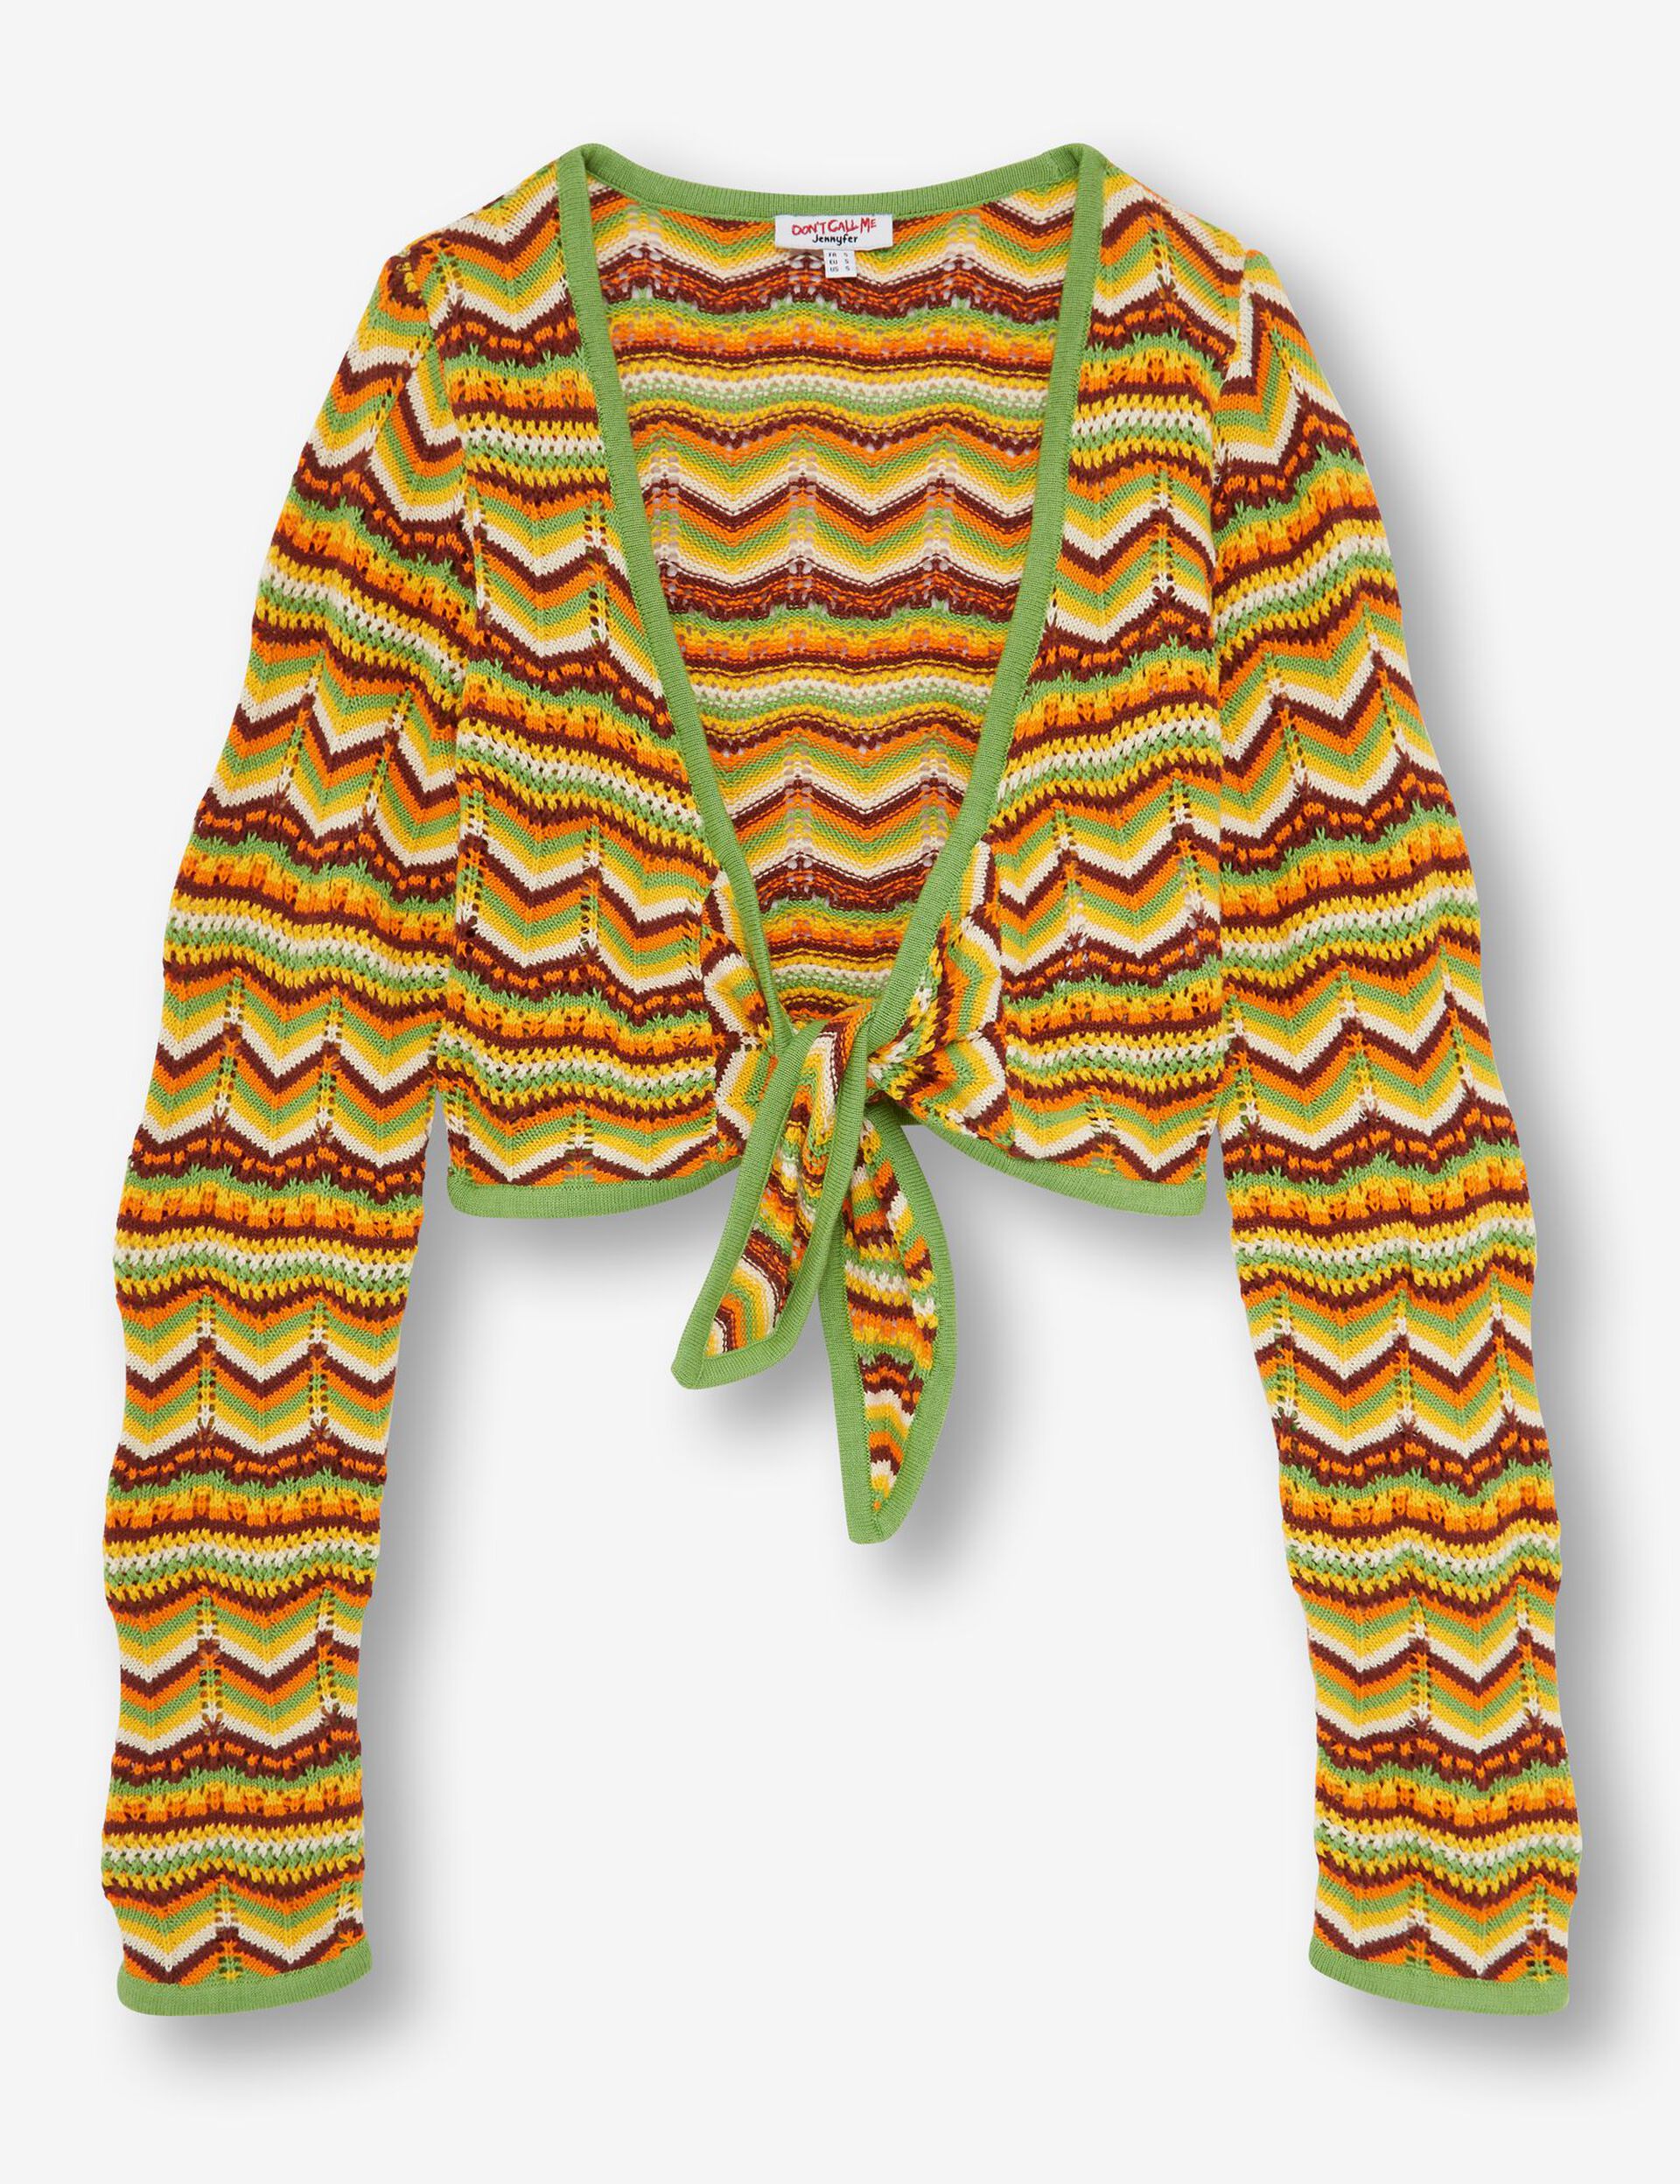 Crochet tie cardigan